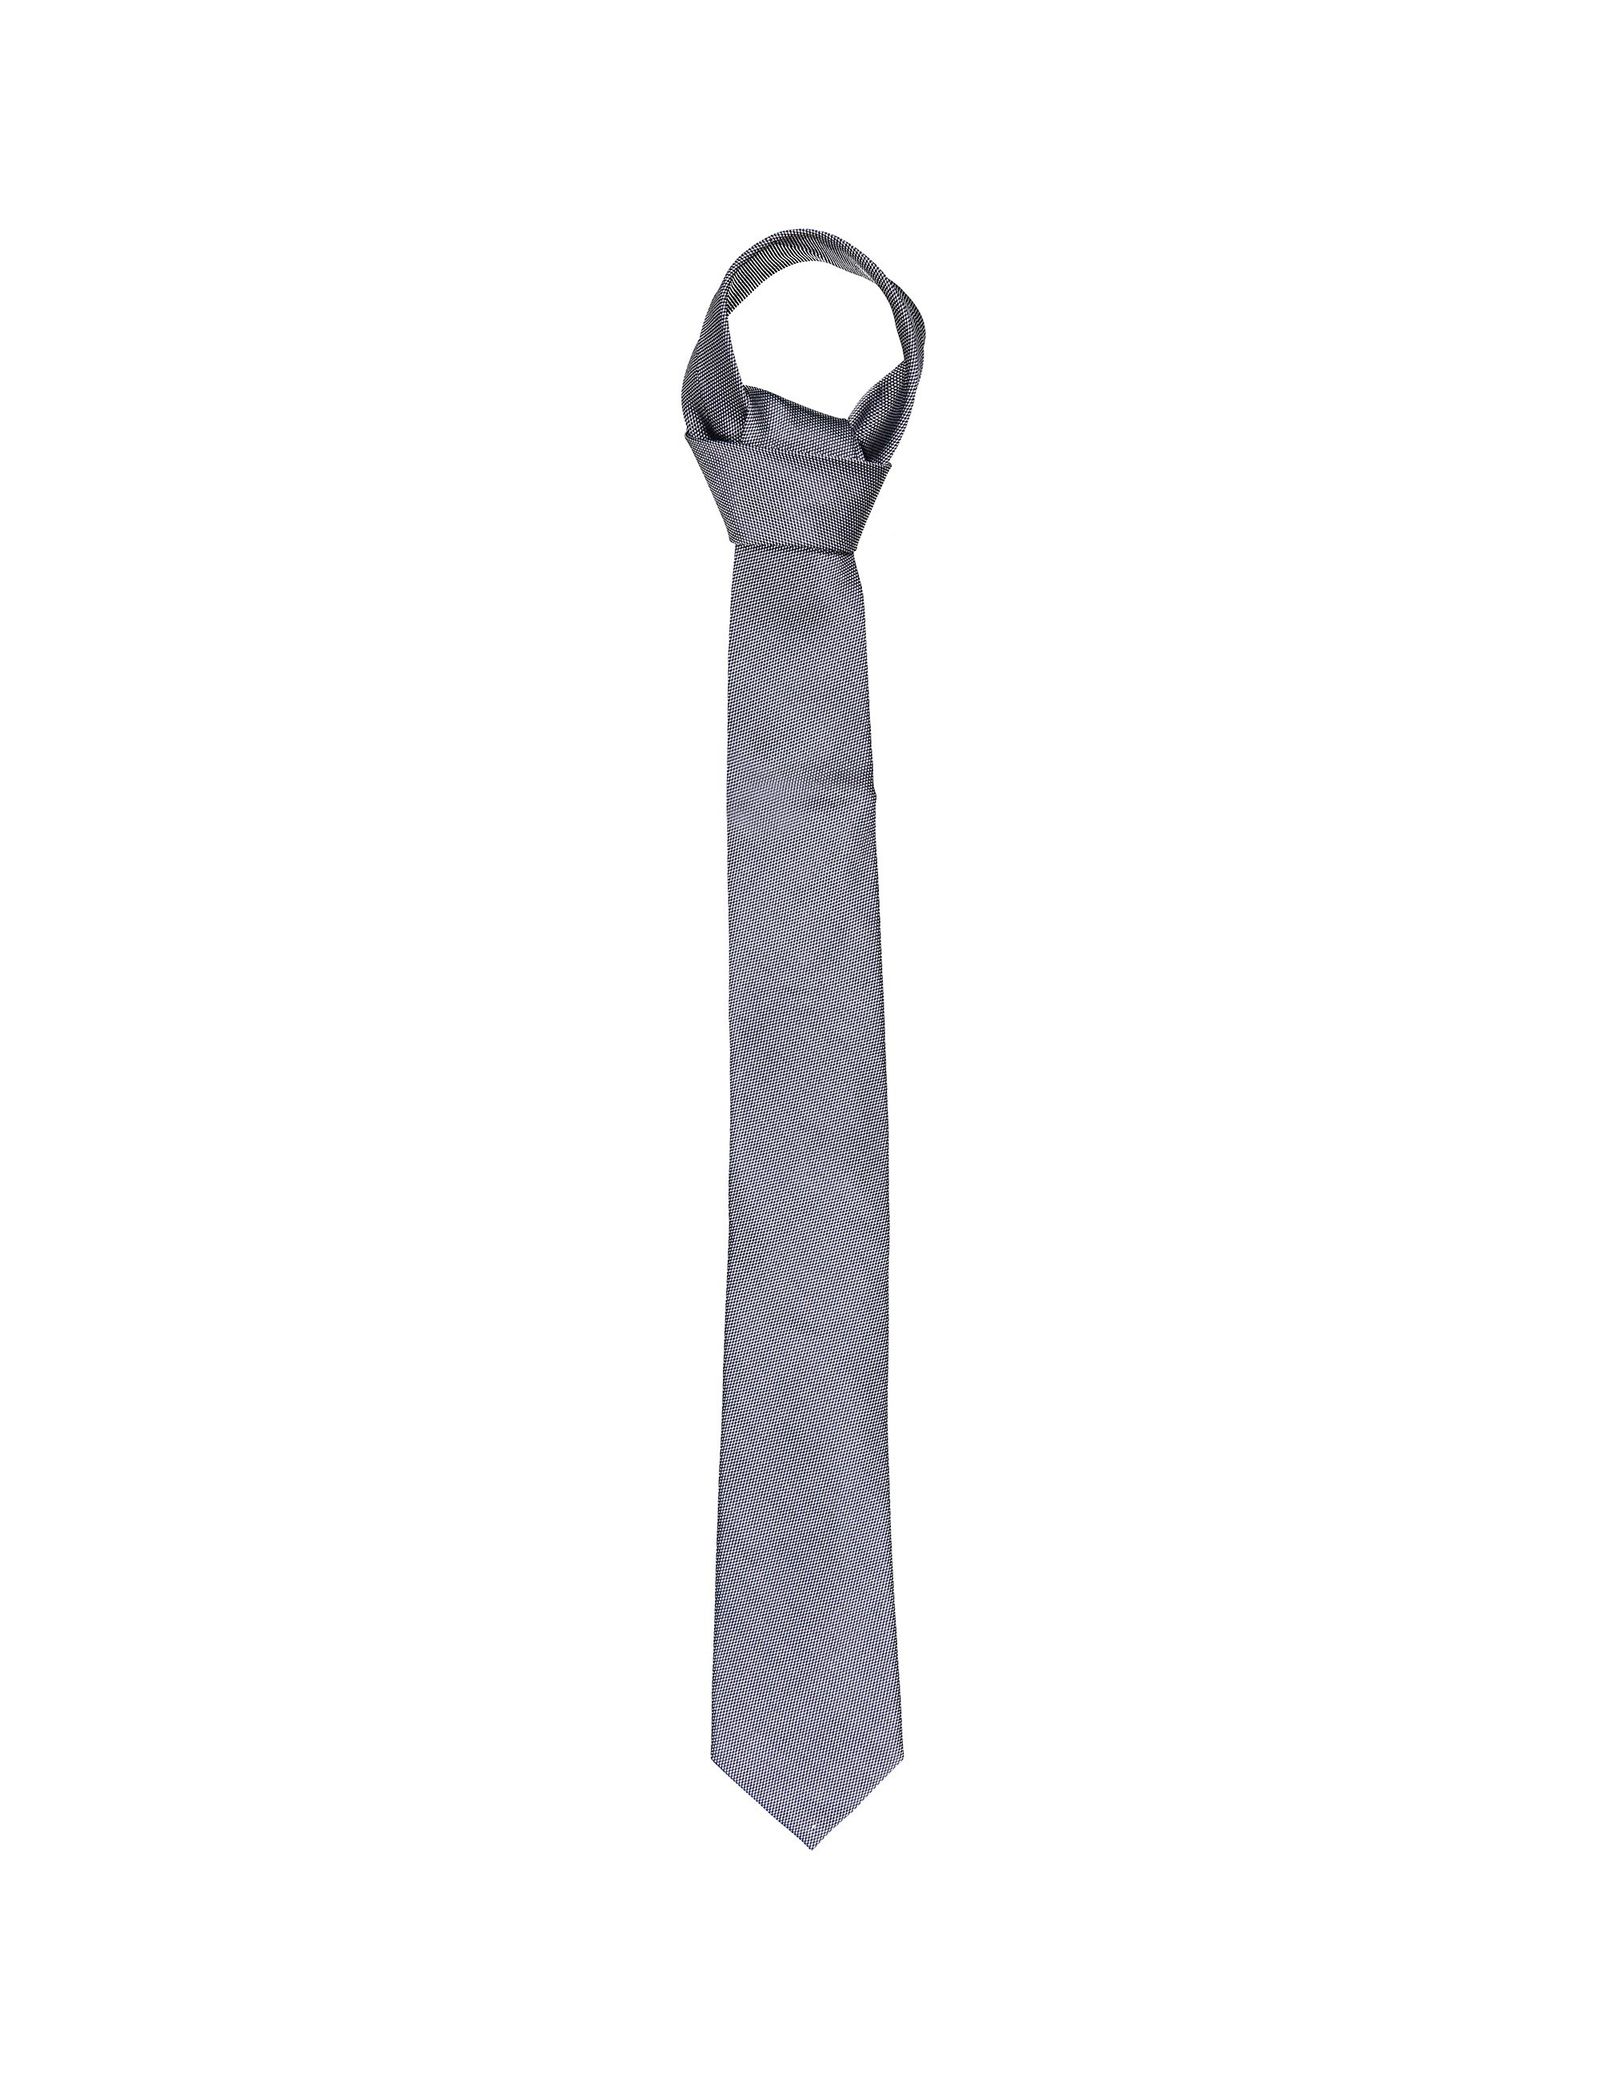 کراوات ابریشم طرح دار مردانه - یوپیم تک سایز - طوسي - 1